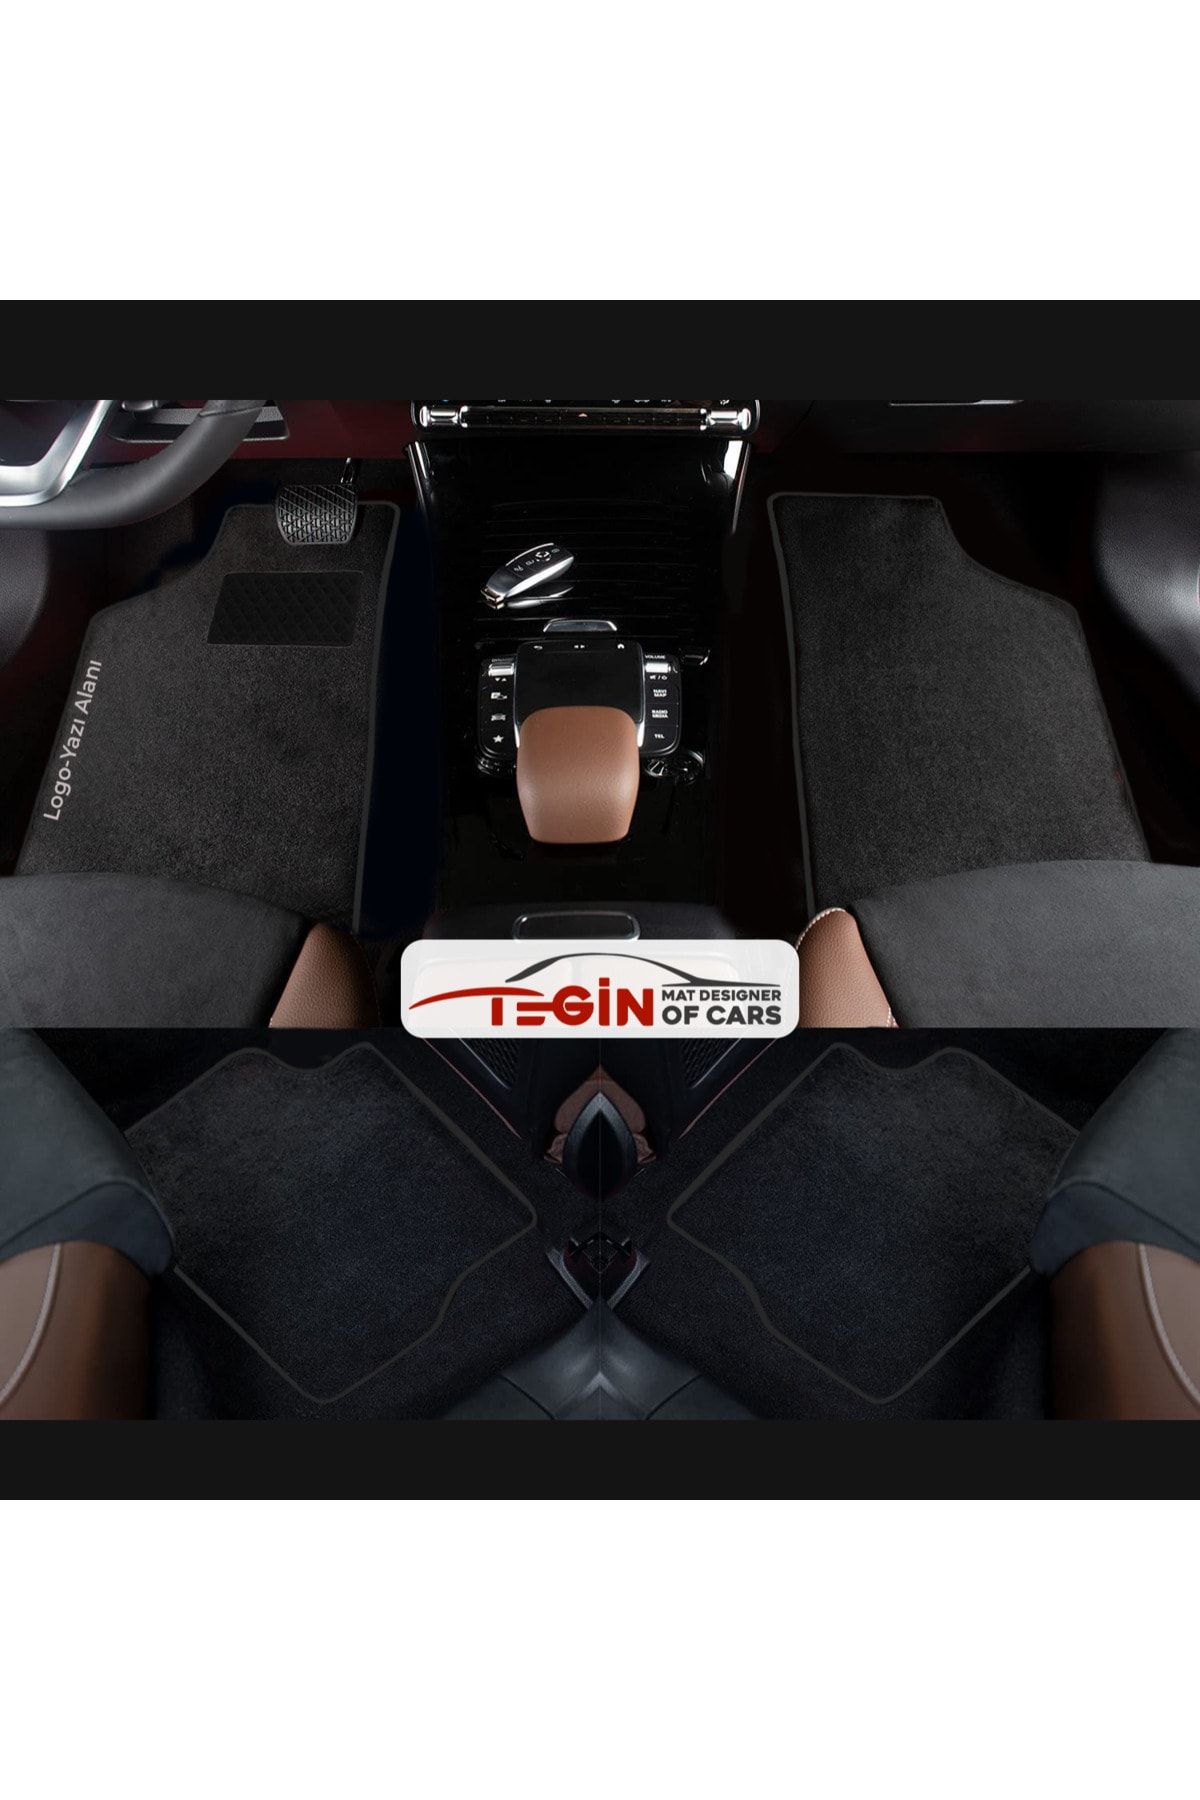 Tegin Mat Designer Of Cars Volkwagen Jetta 2011 + Aracınıza Özel Prime Siyah Halı Siyah Kenar Halı Paspas